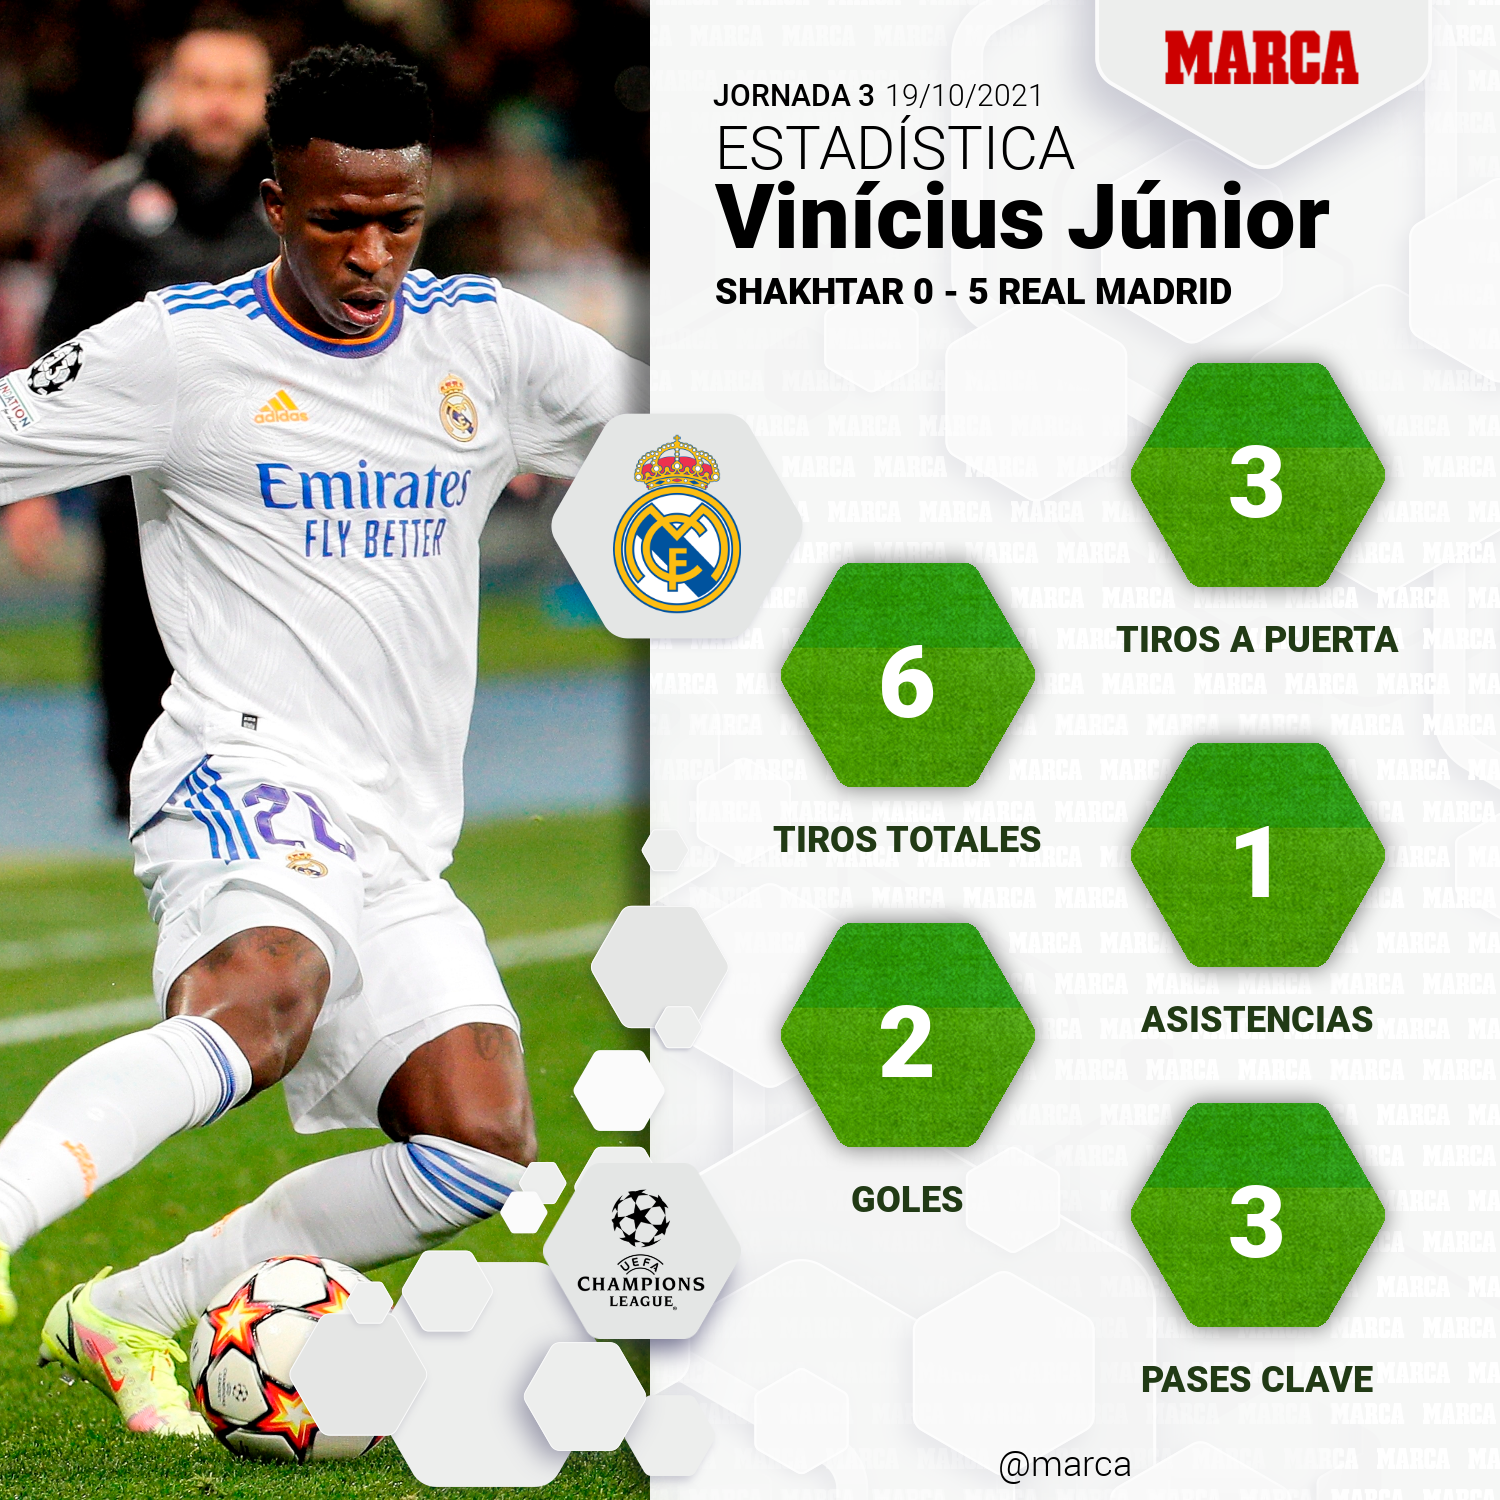 Real Madrid: El golazo de Vinicius 'Nazario' que enloquece al madridismo: bicicleta, recorte a tres rivales y a la jaula Marca